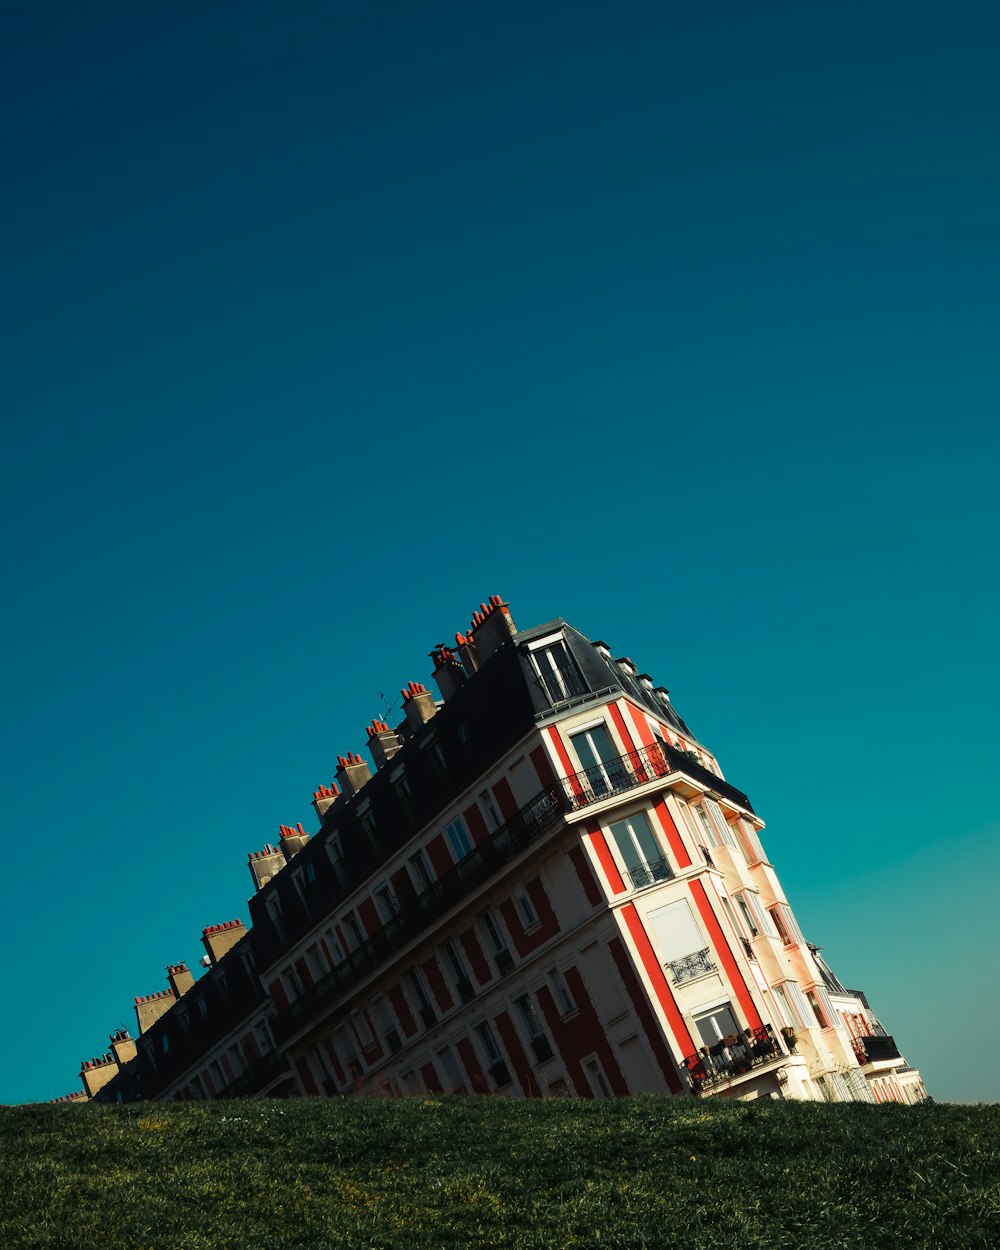 Edificio de hormigón blanco y rojo bajo el cielo verde azulado